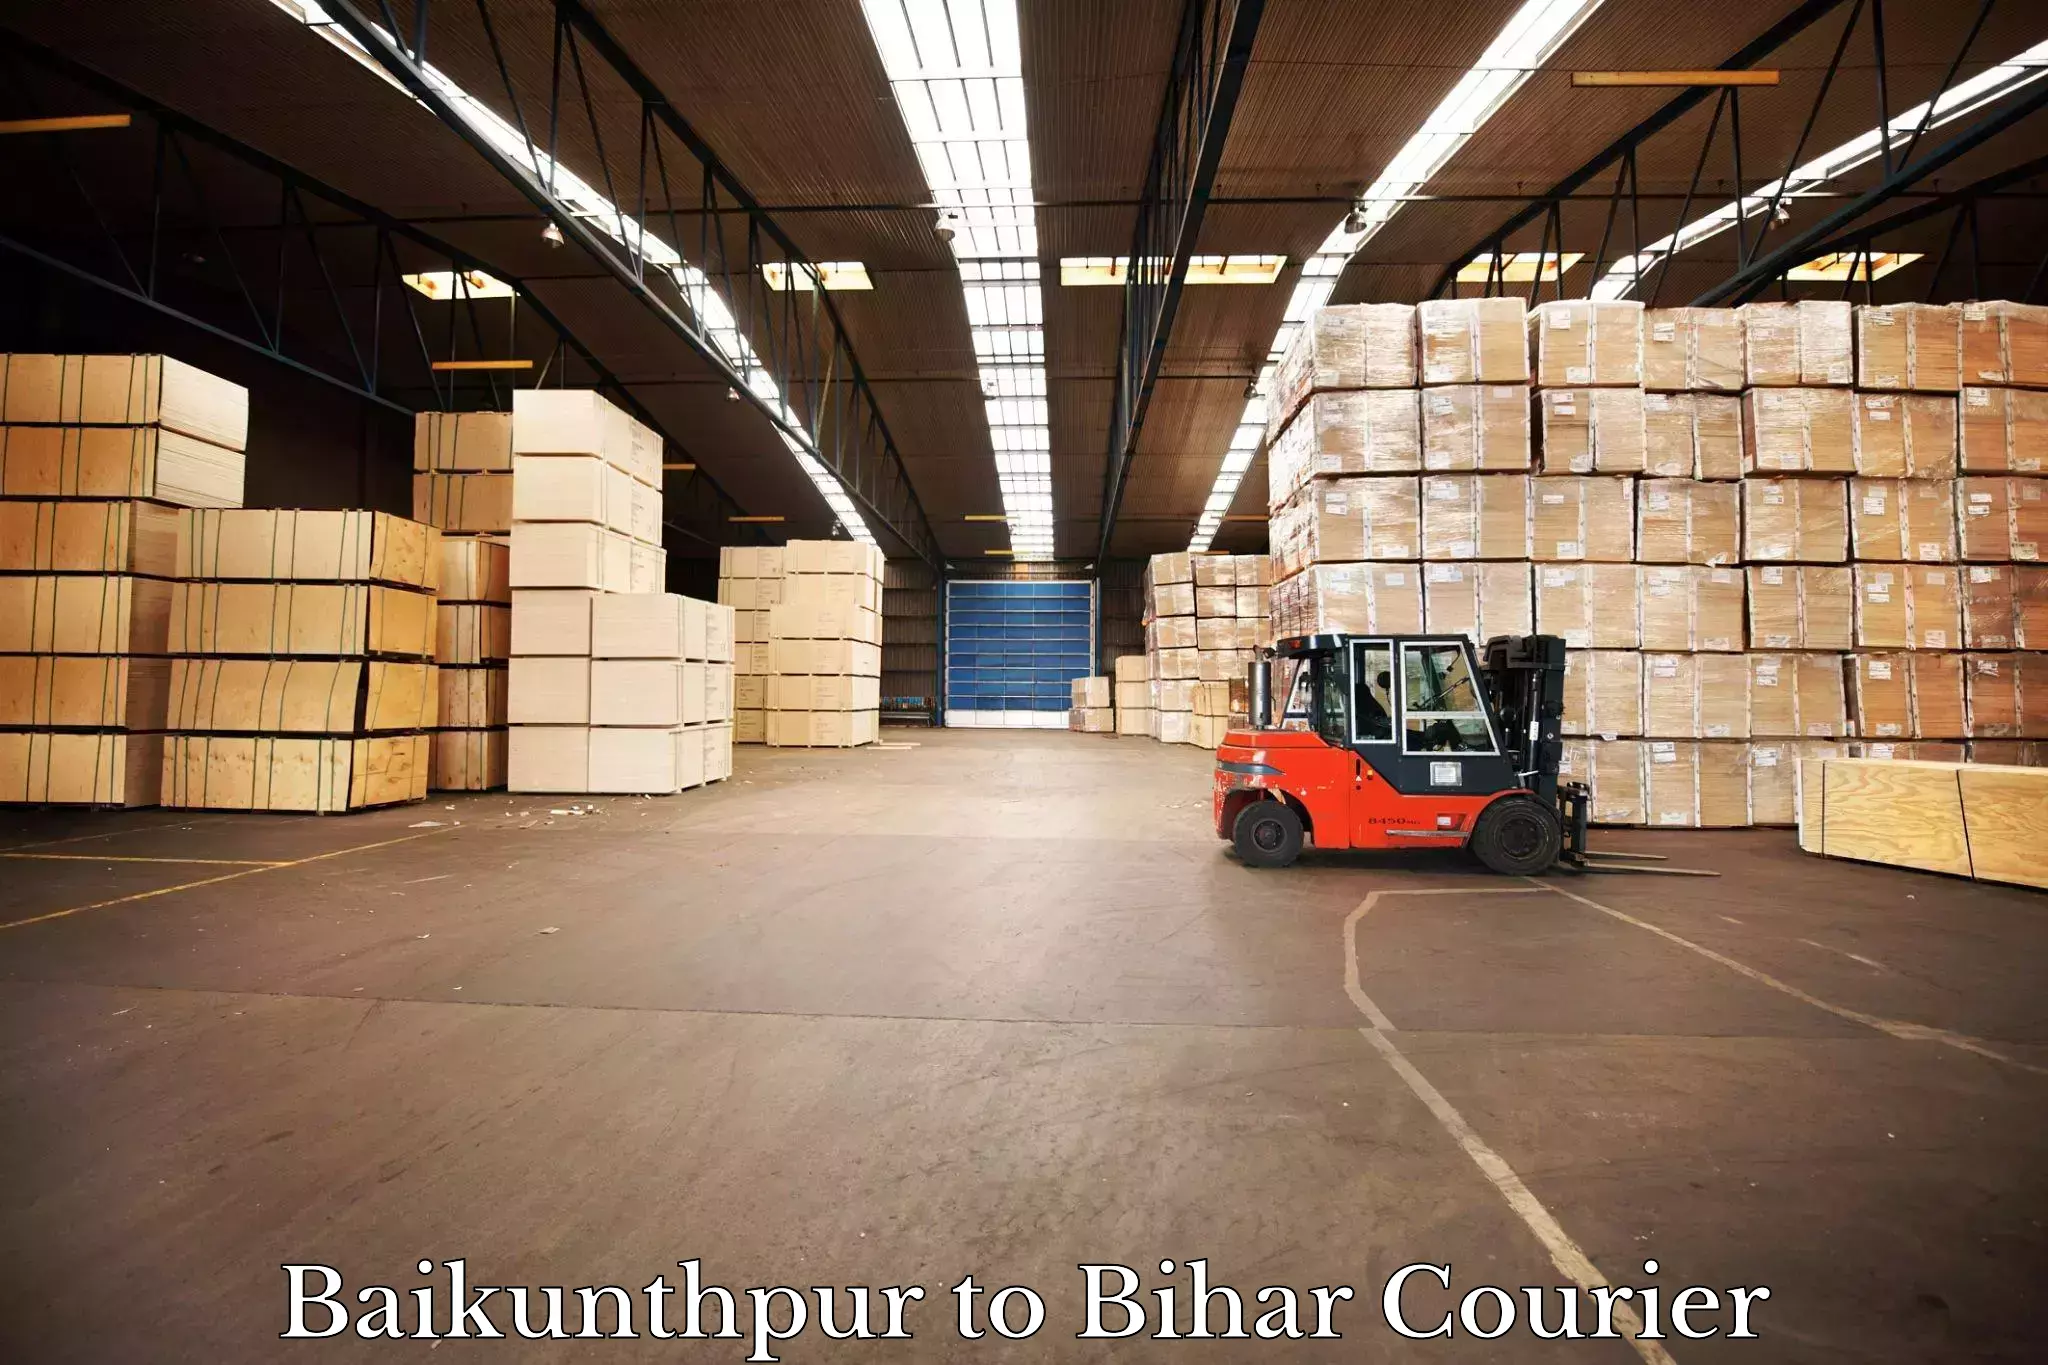 Business shipping needs Baikunthpur to Bihta